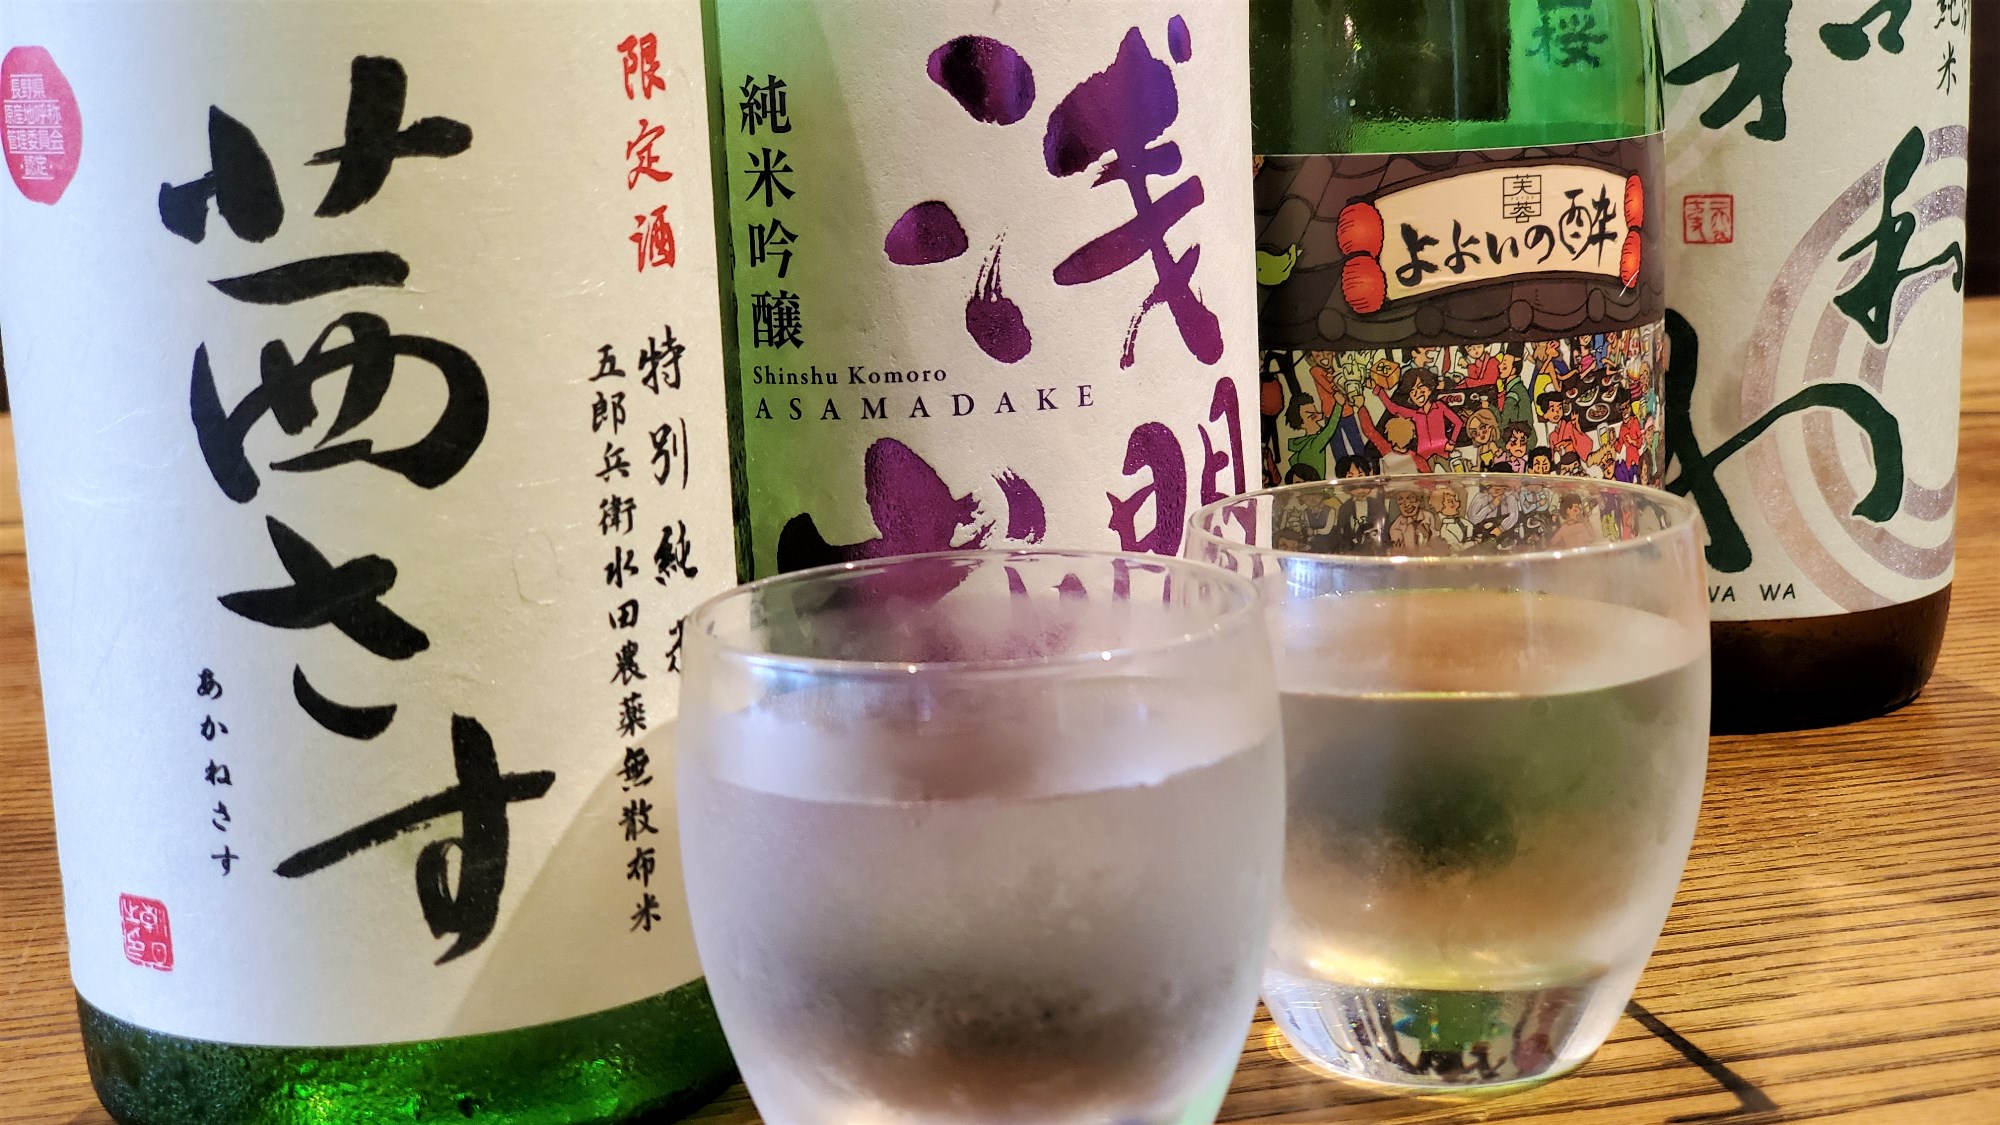 SAKU13☆佐久地域の13の酒蔵の若手経営者が共同で酒を作り上げる新ブランドです